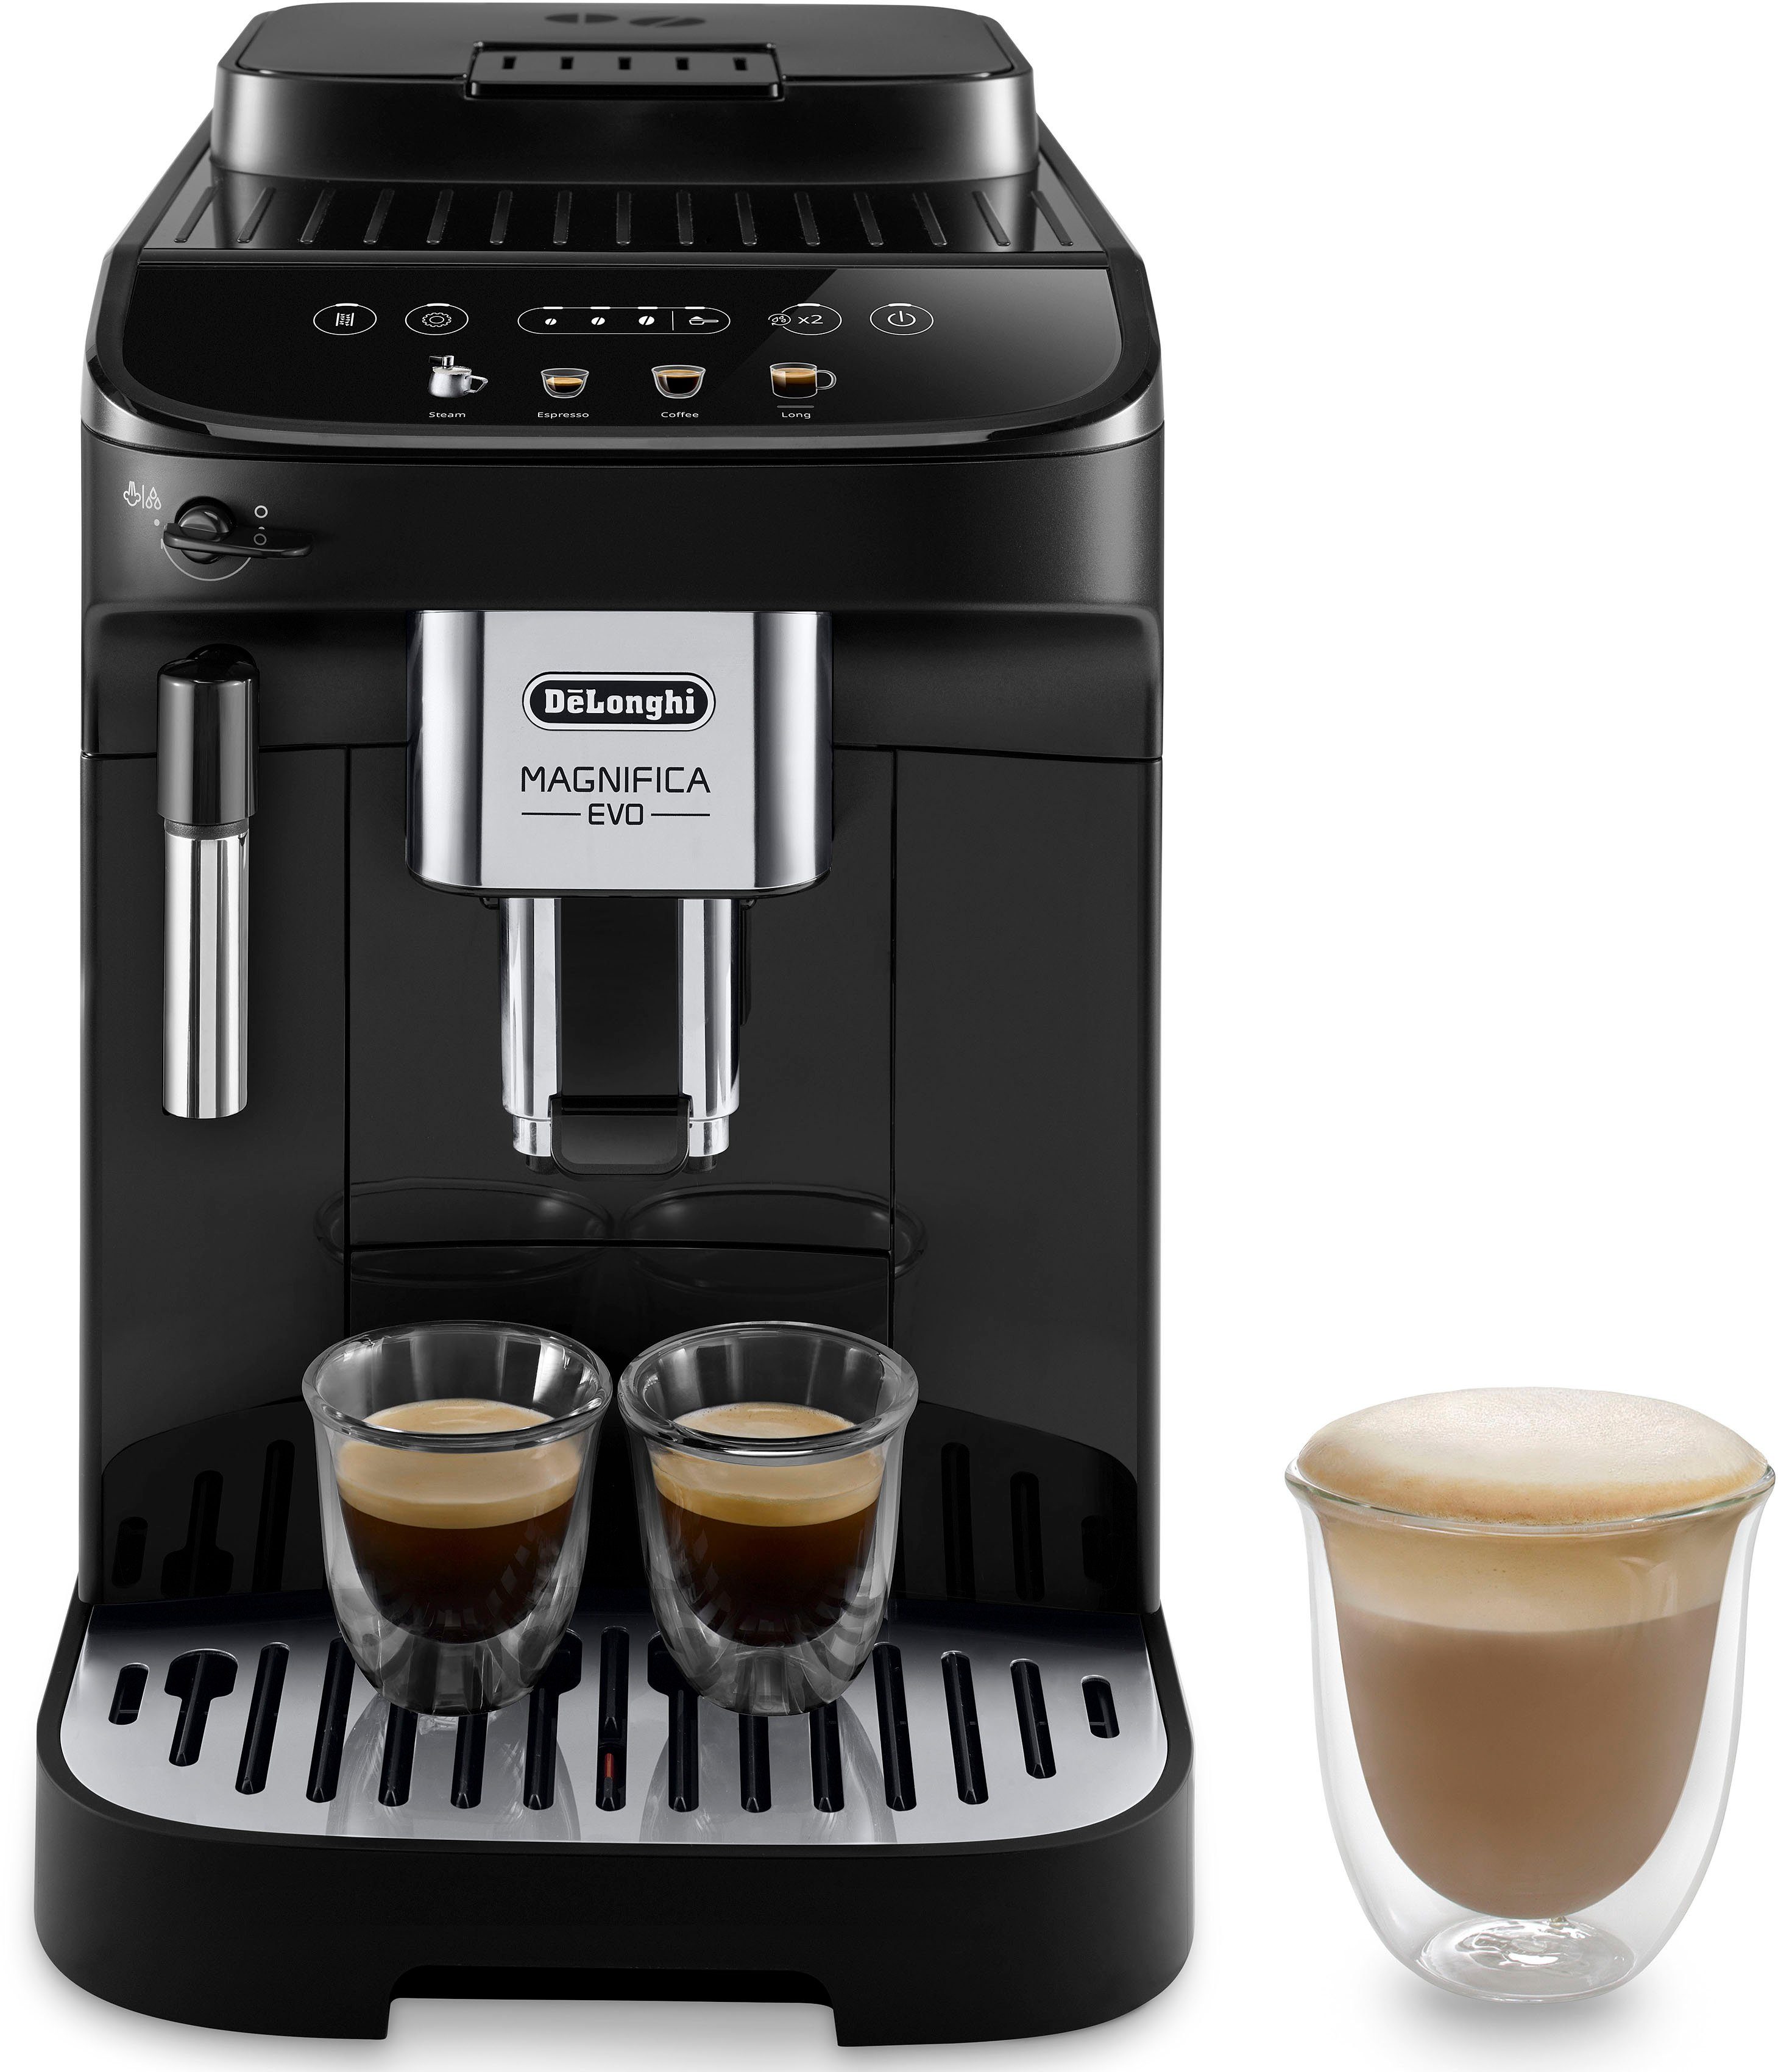 DeLonghi espresso apparaat ECAM290.21B